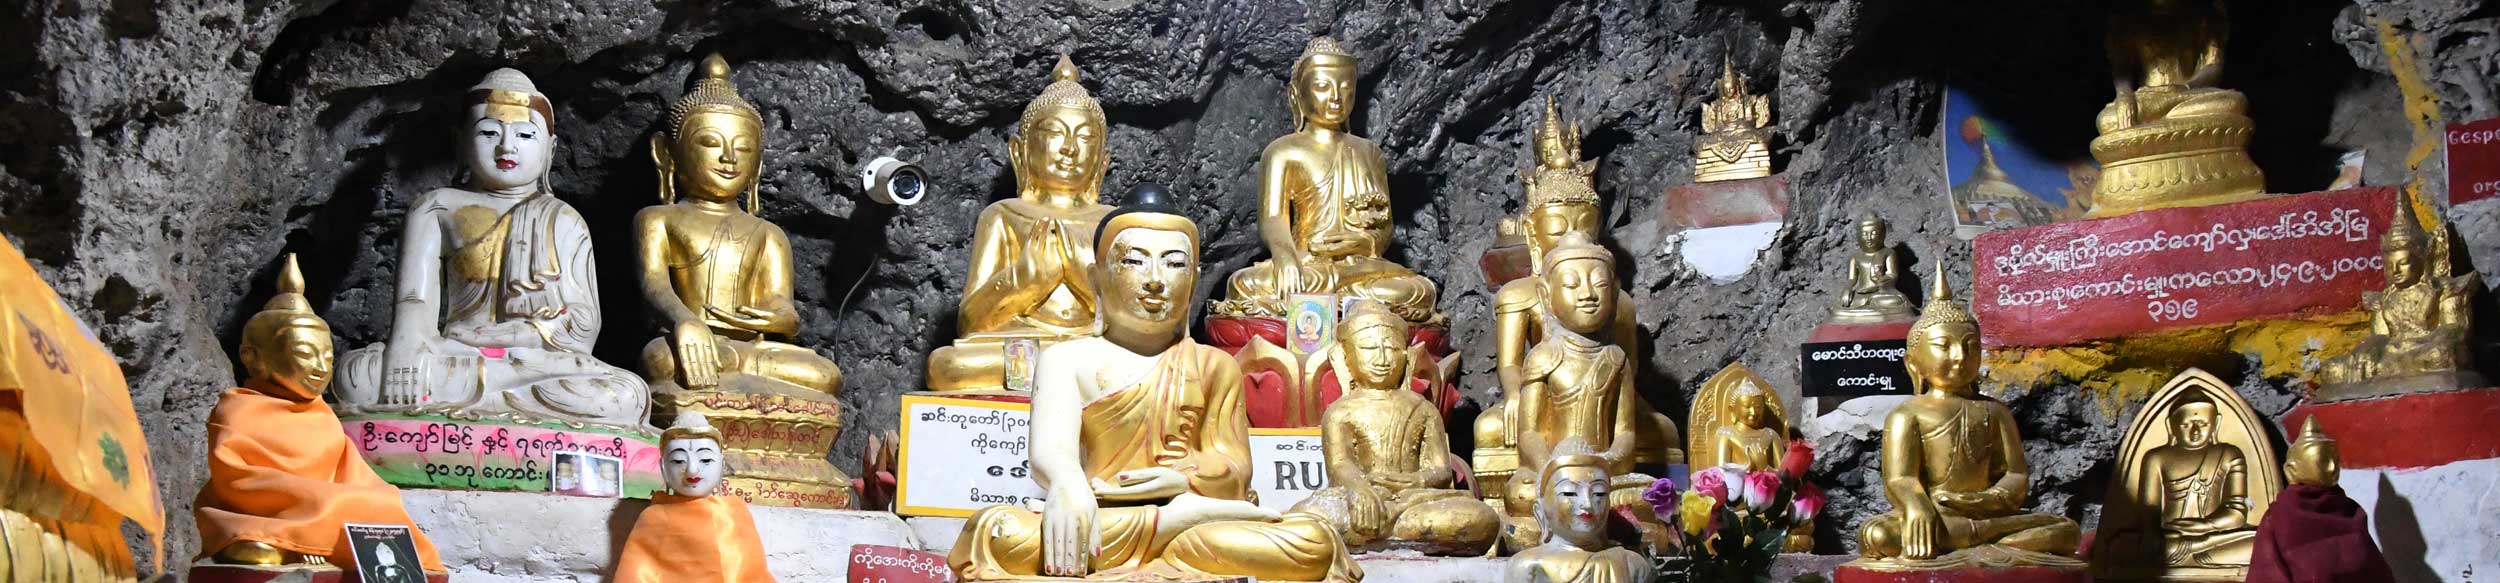 Les statues bouddhiques dans les grottes de Pindaya